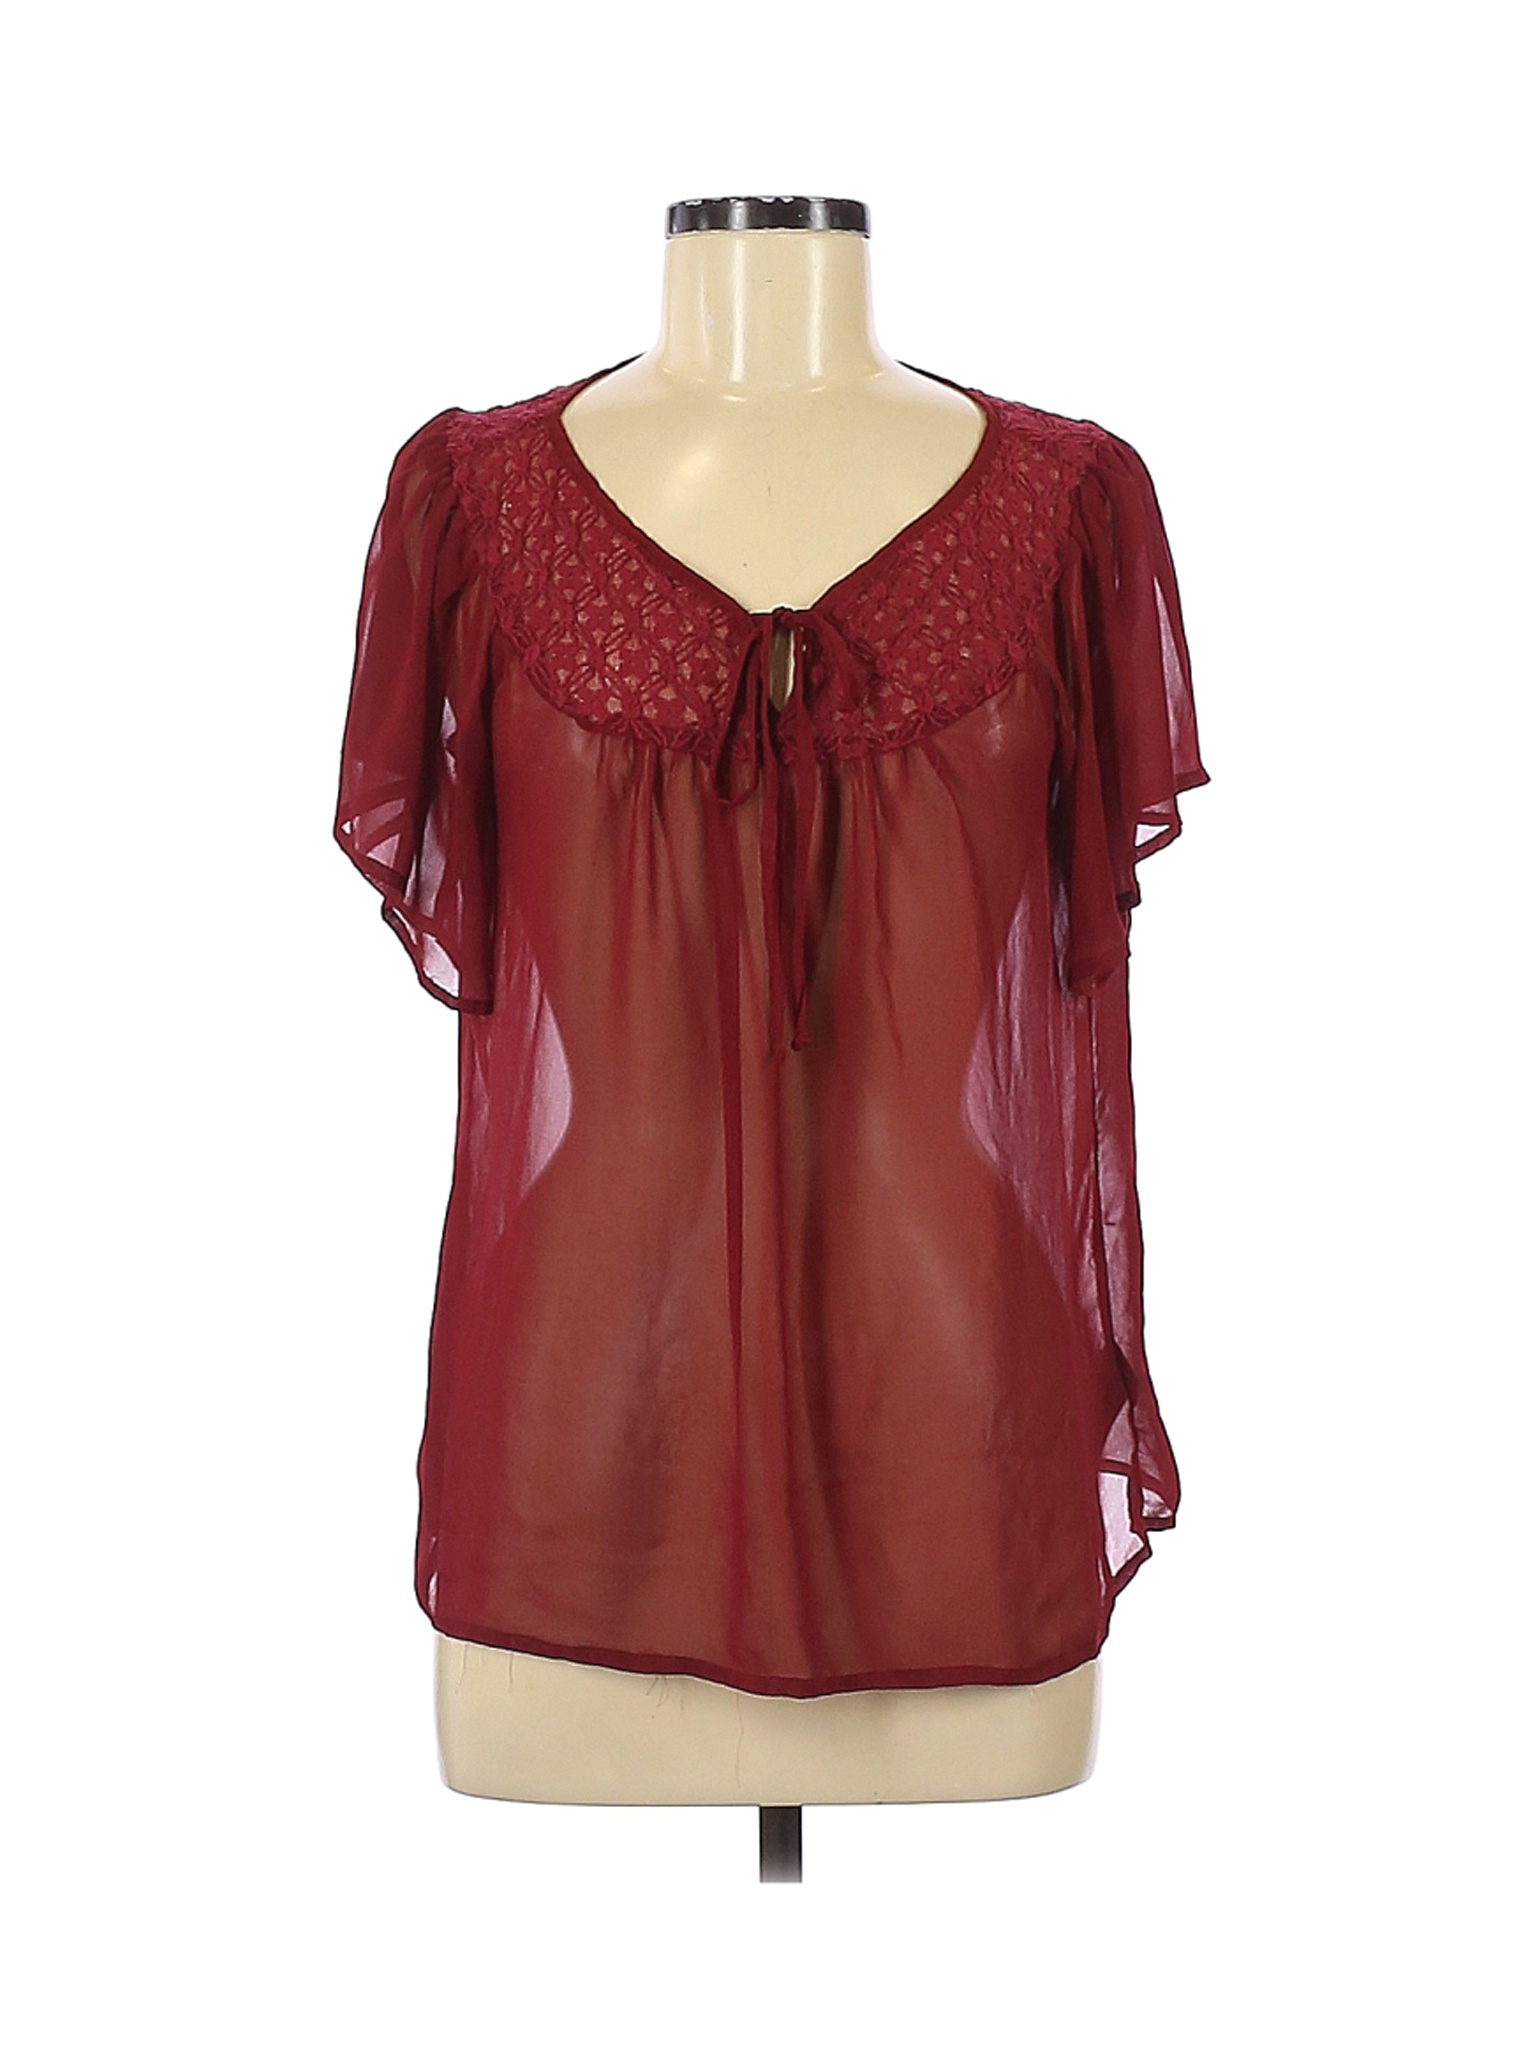 Forever 21 Women Red Short Sleeve Blouse M | eBay